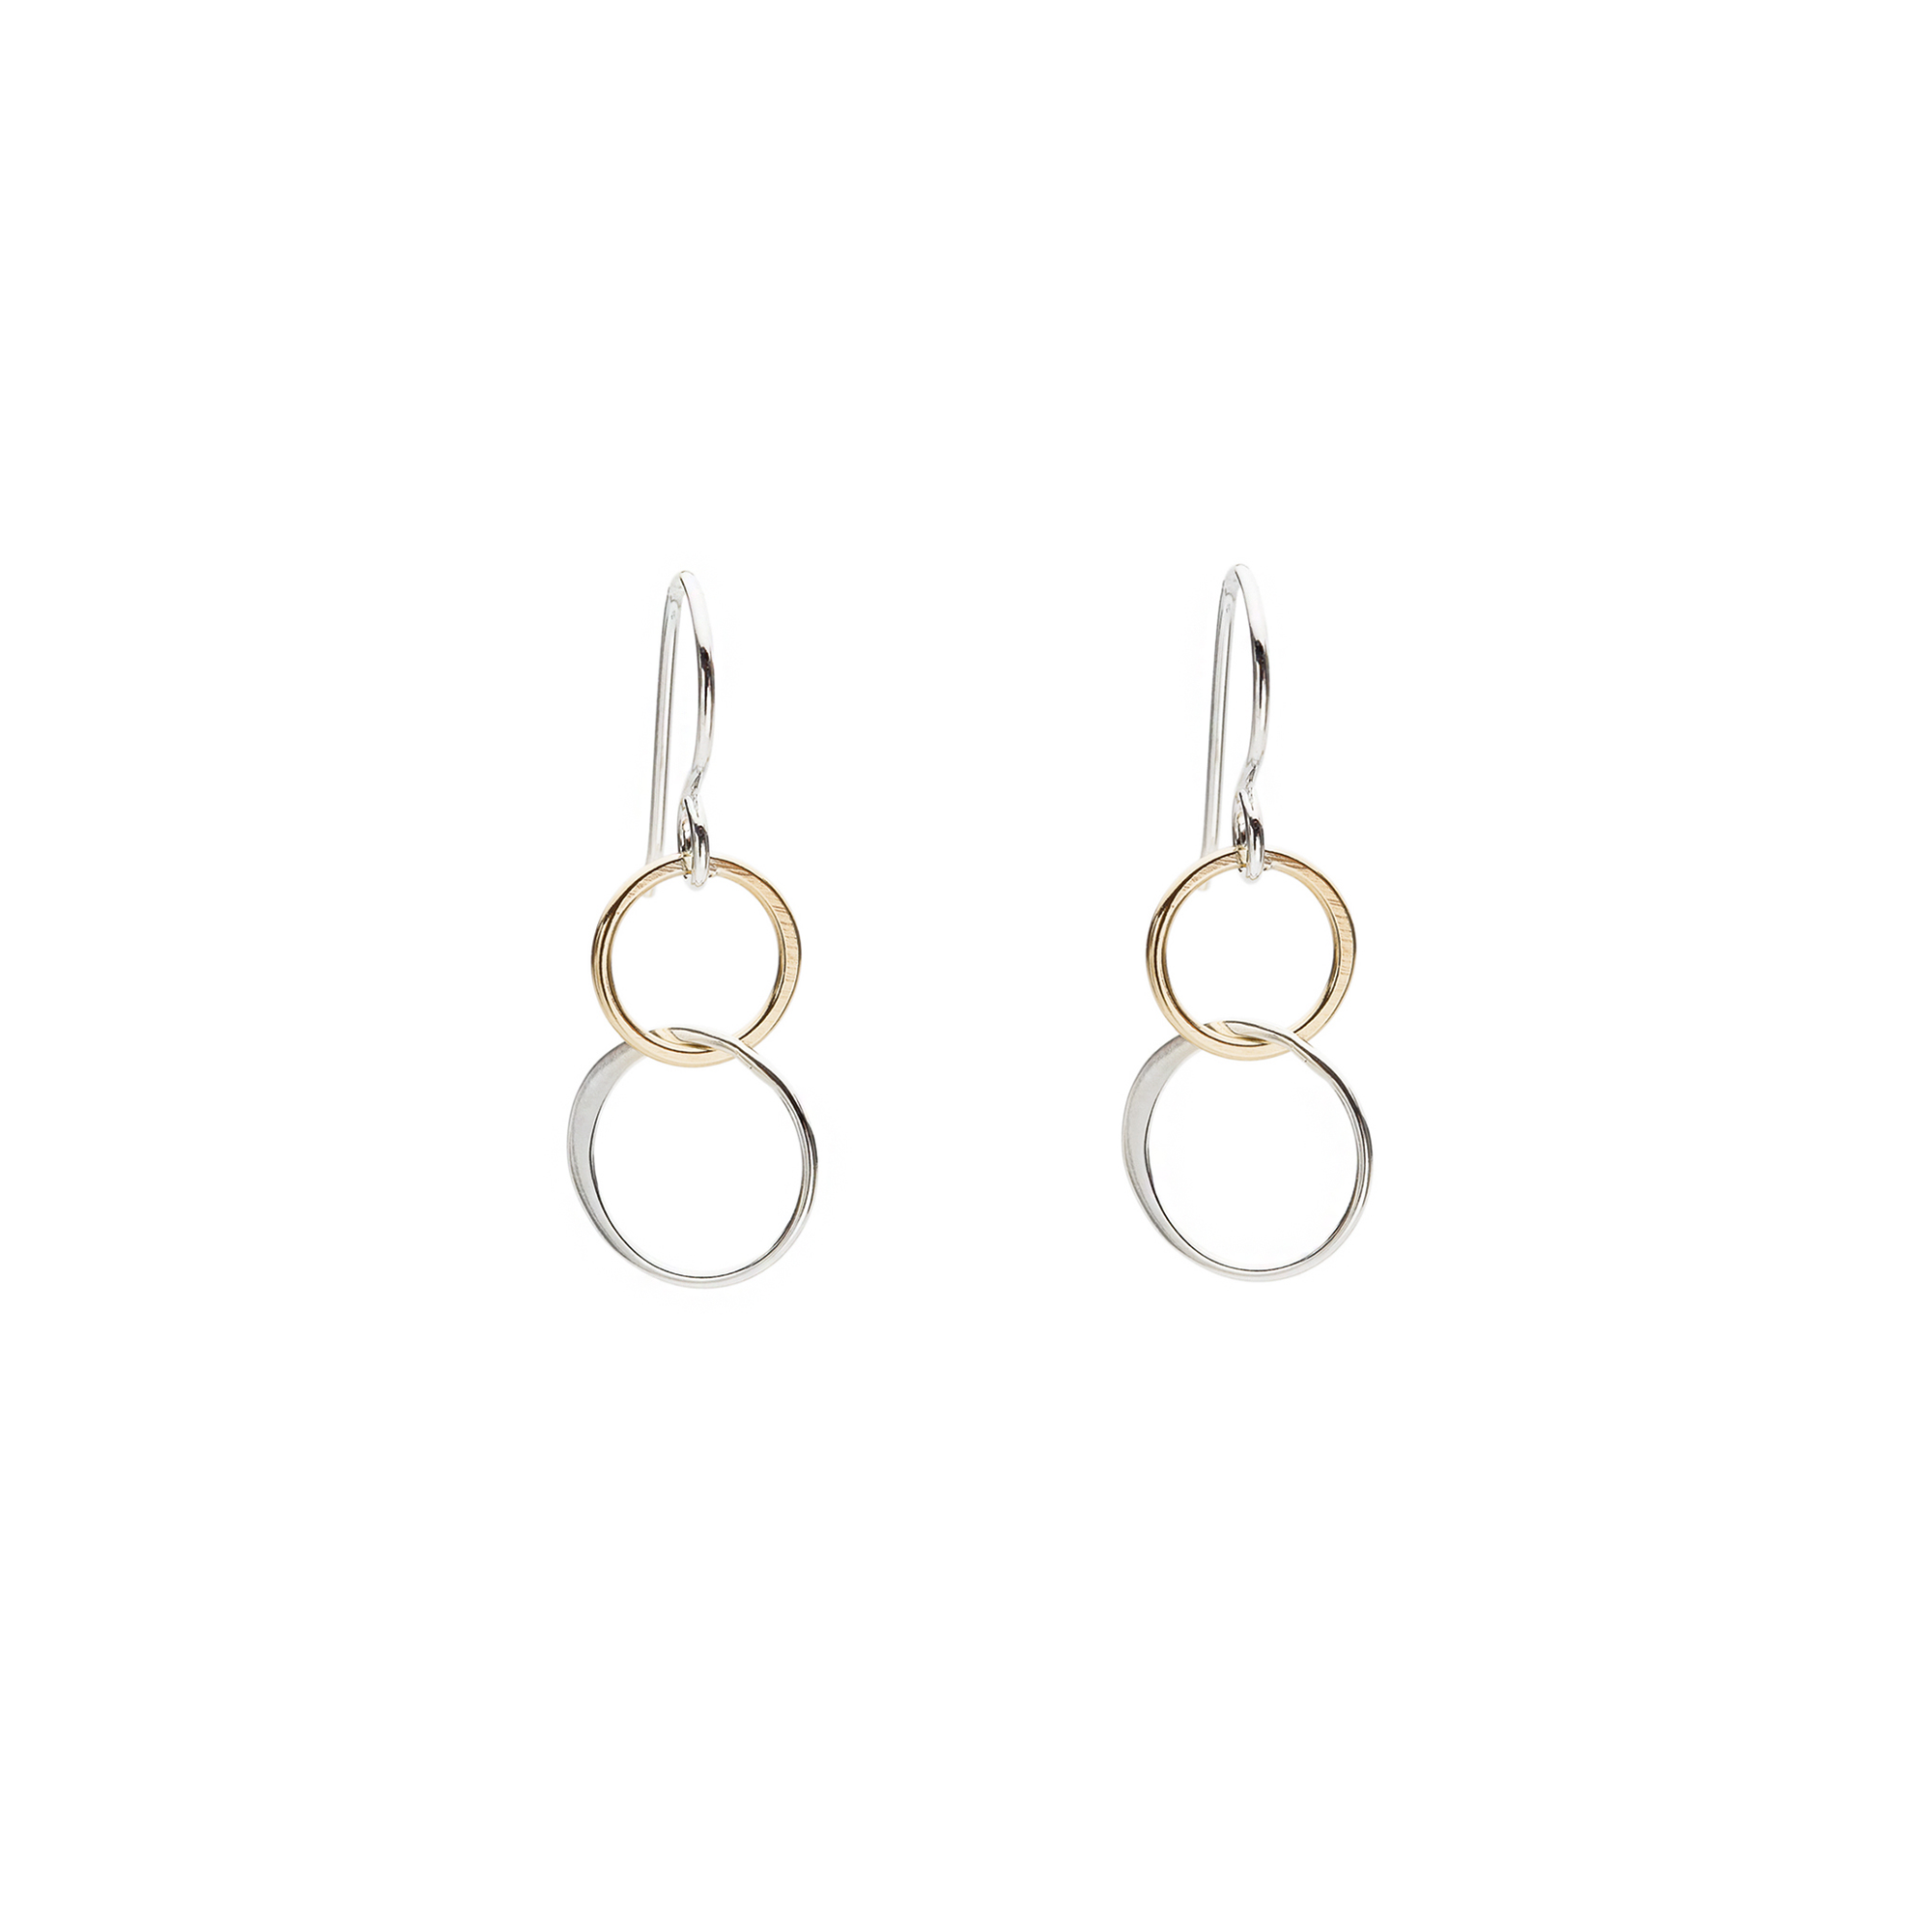 Open Hoop Silver Dangle Earrings - Handmade Jewelry by Artulia Jewelry